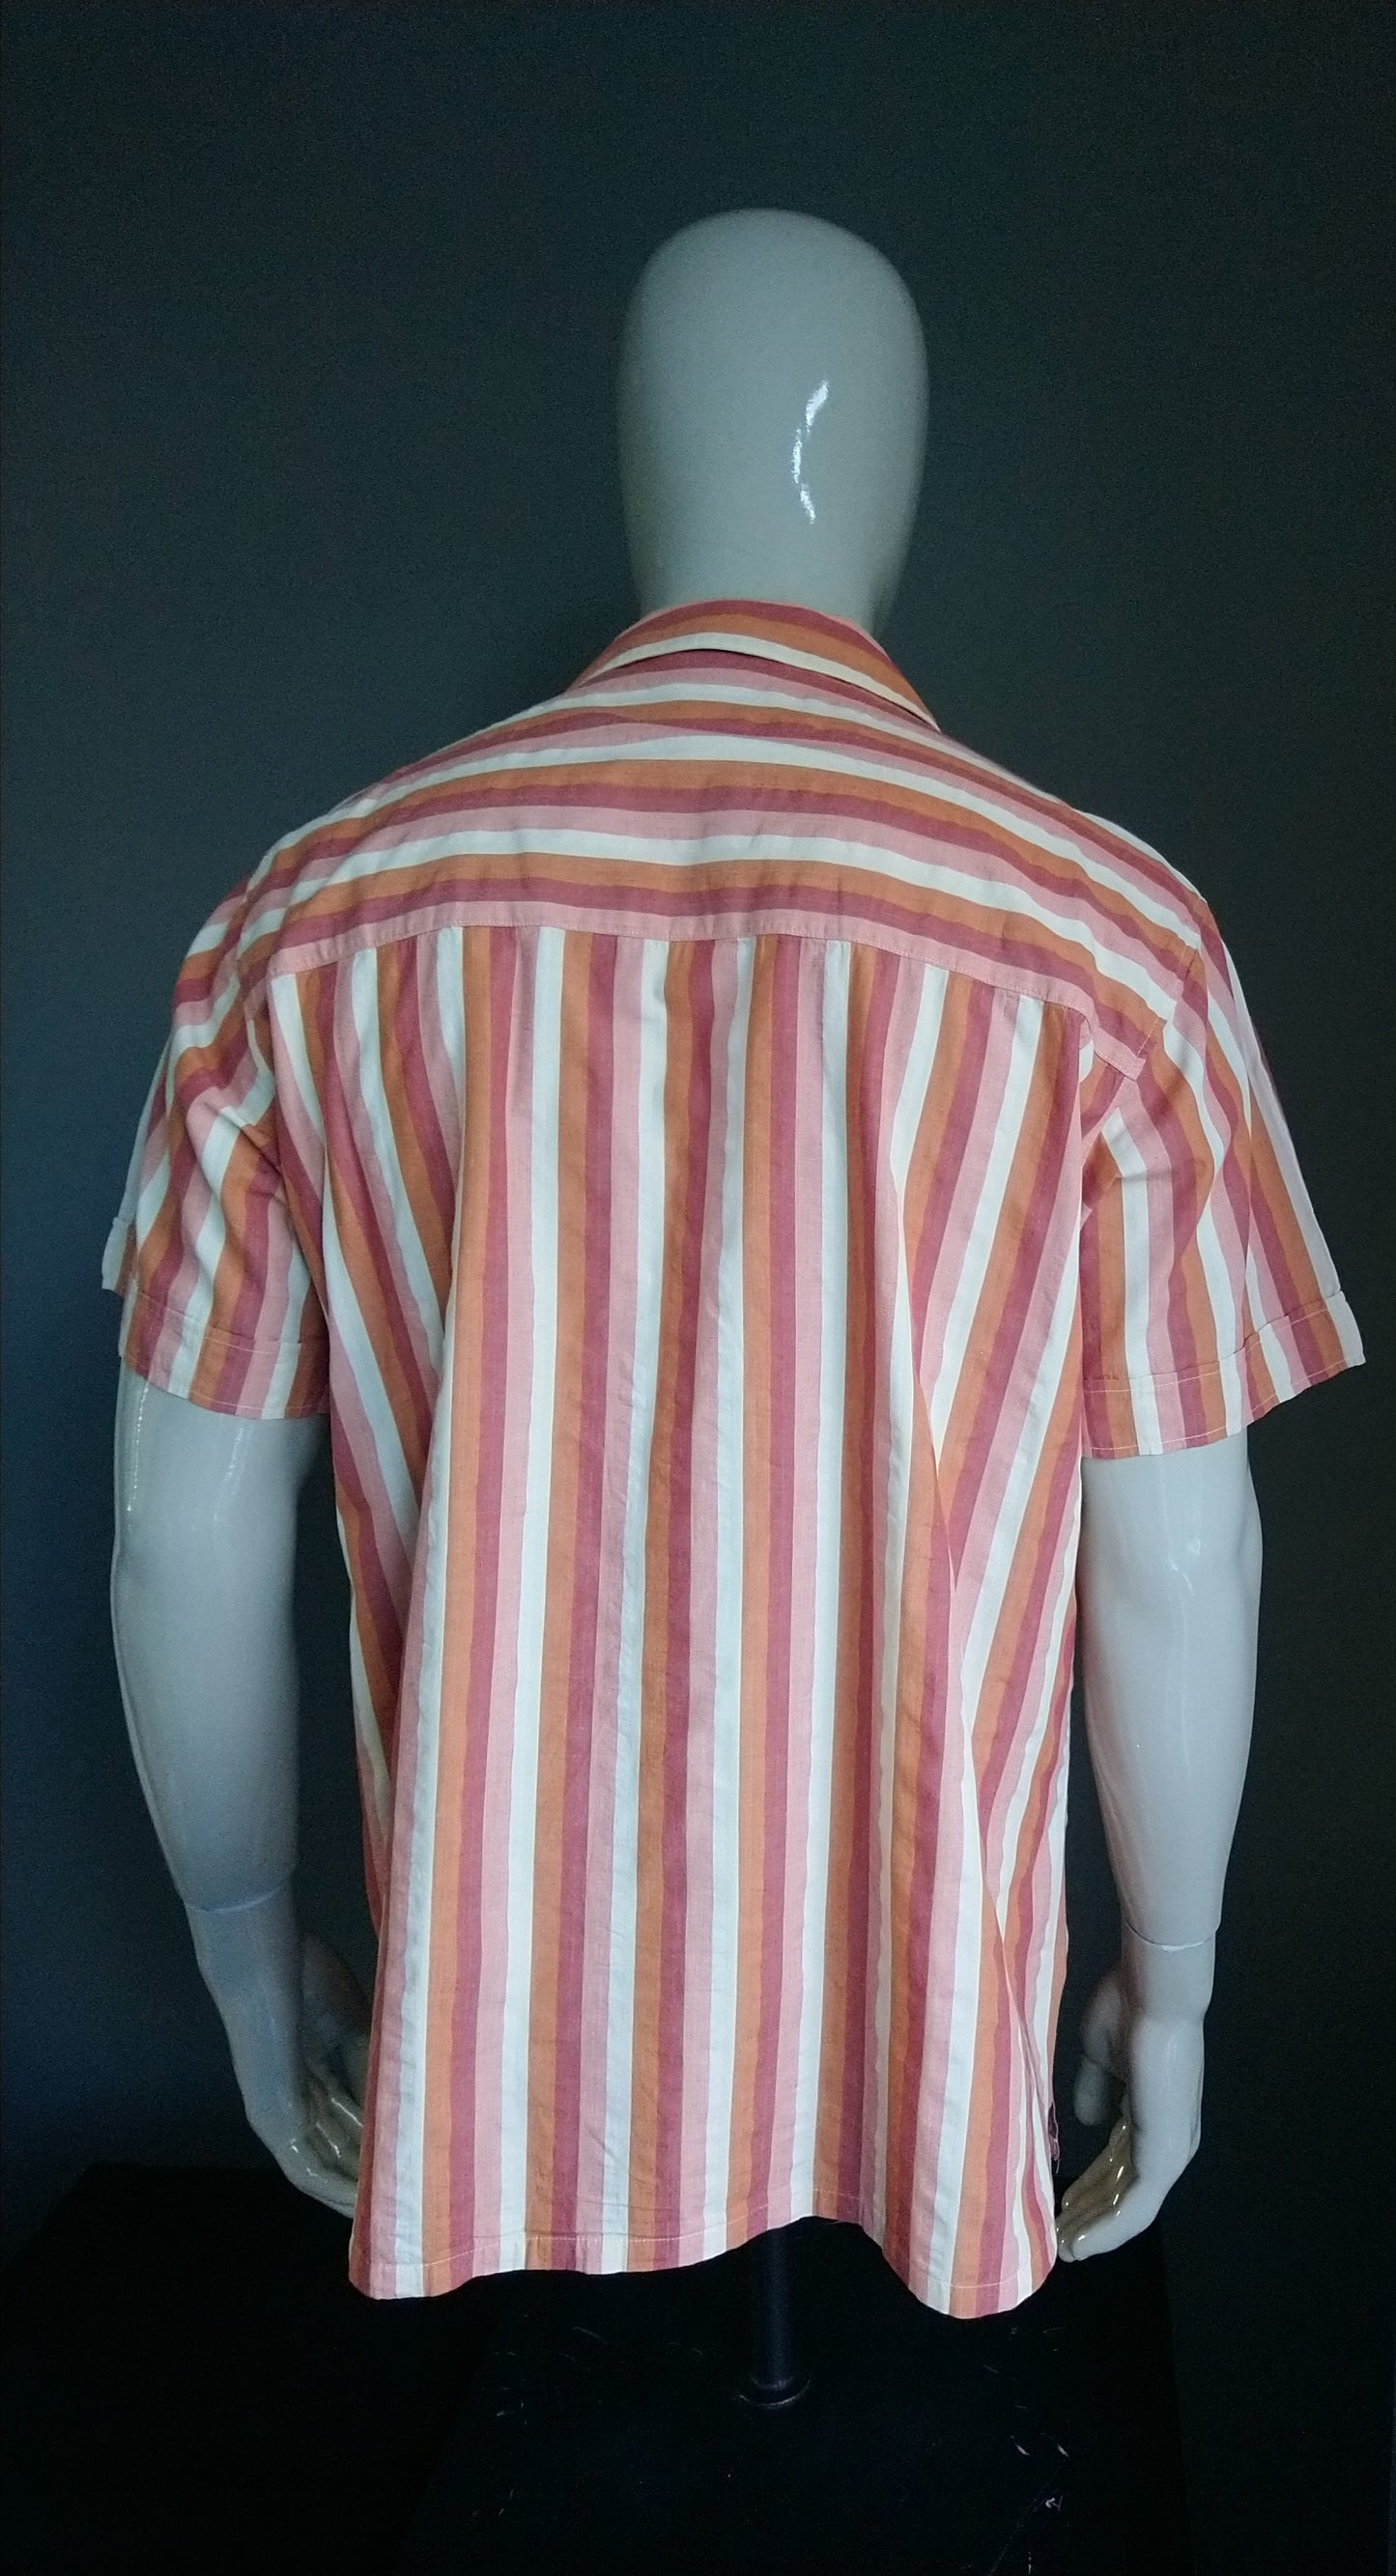 Jack Wolfskin Shirt short sleeve. Orange beige striped. Size XL.